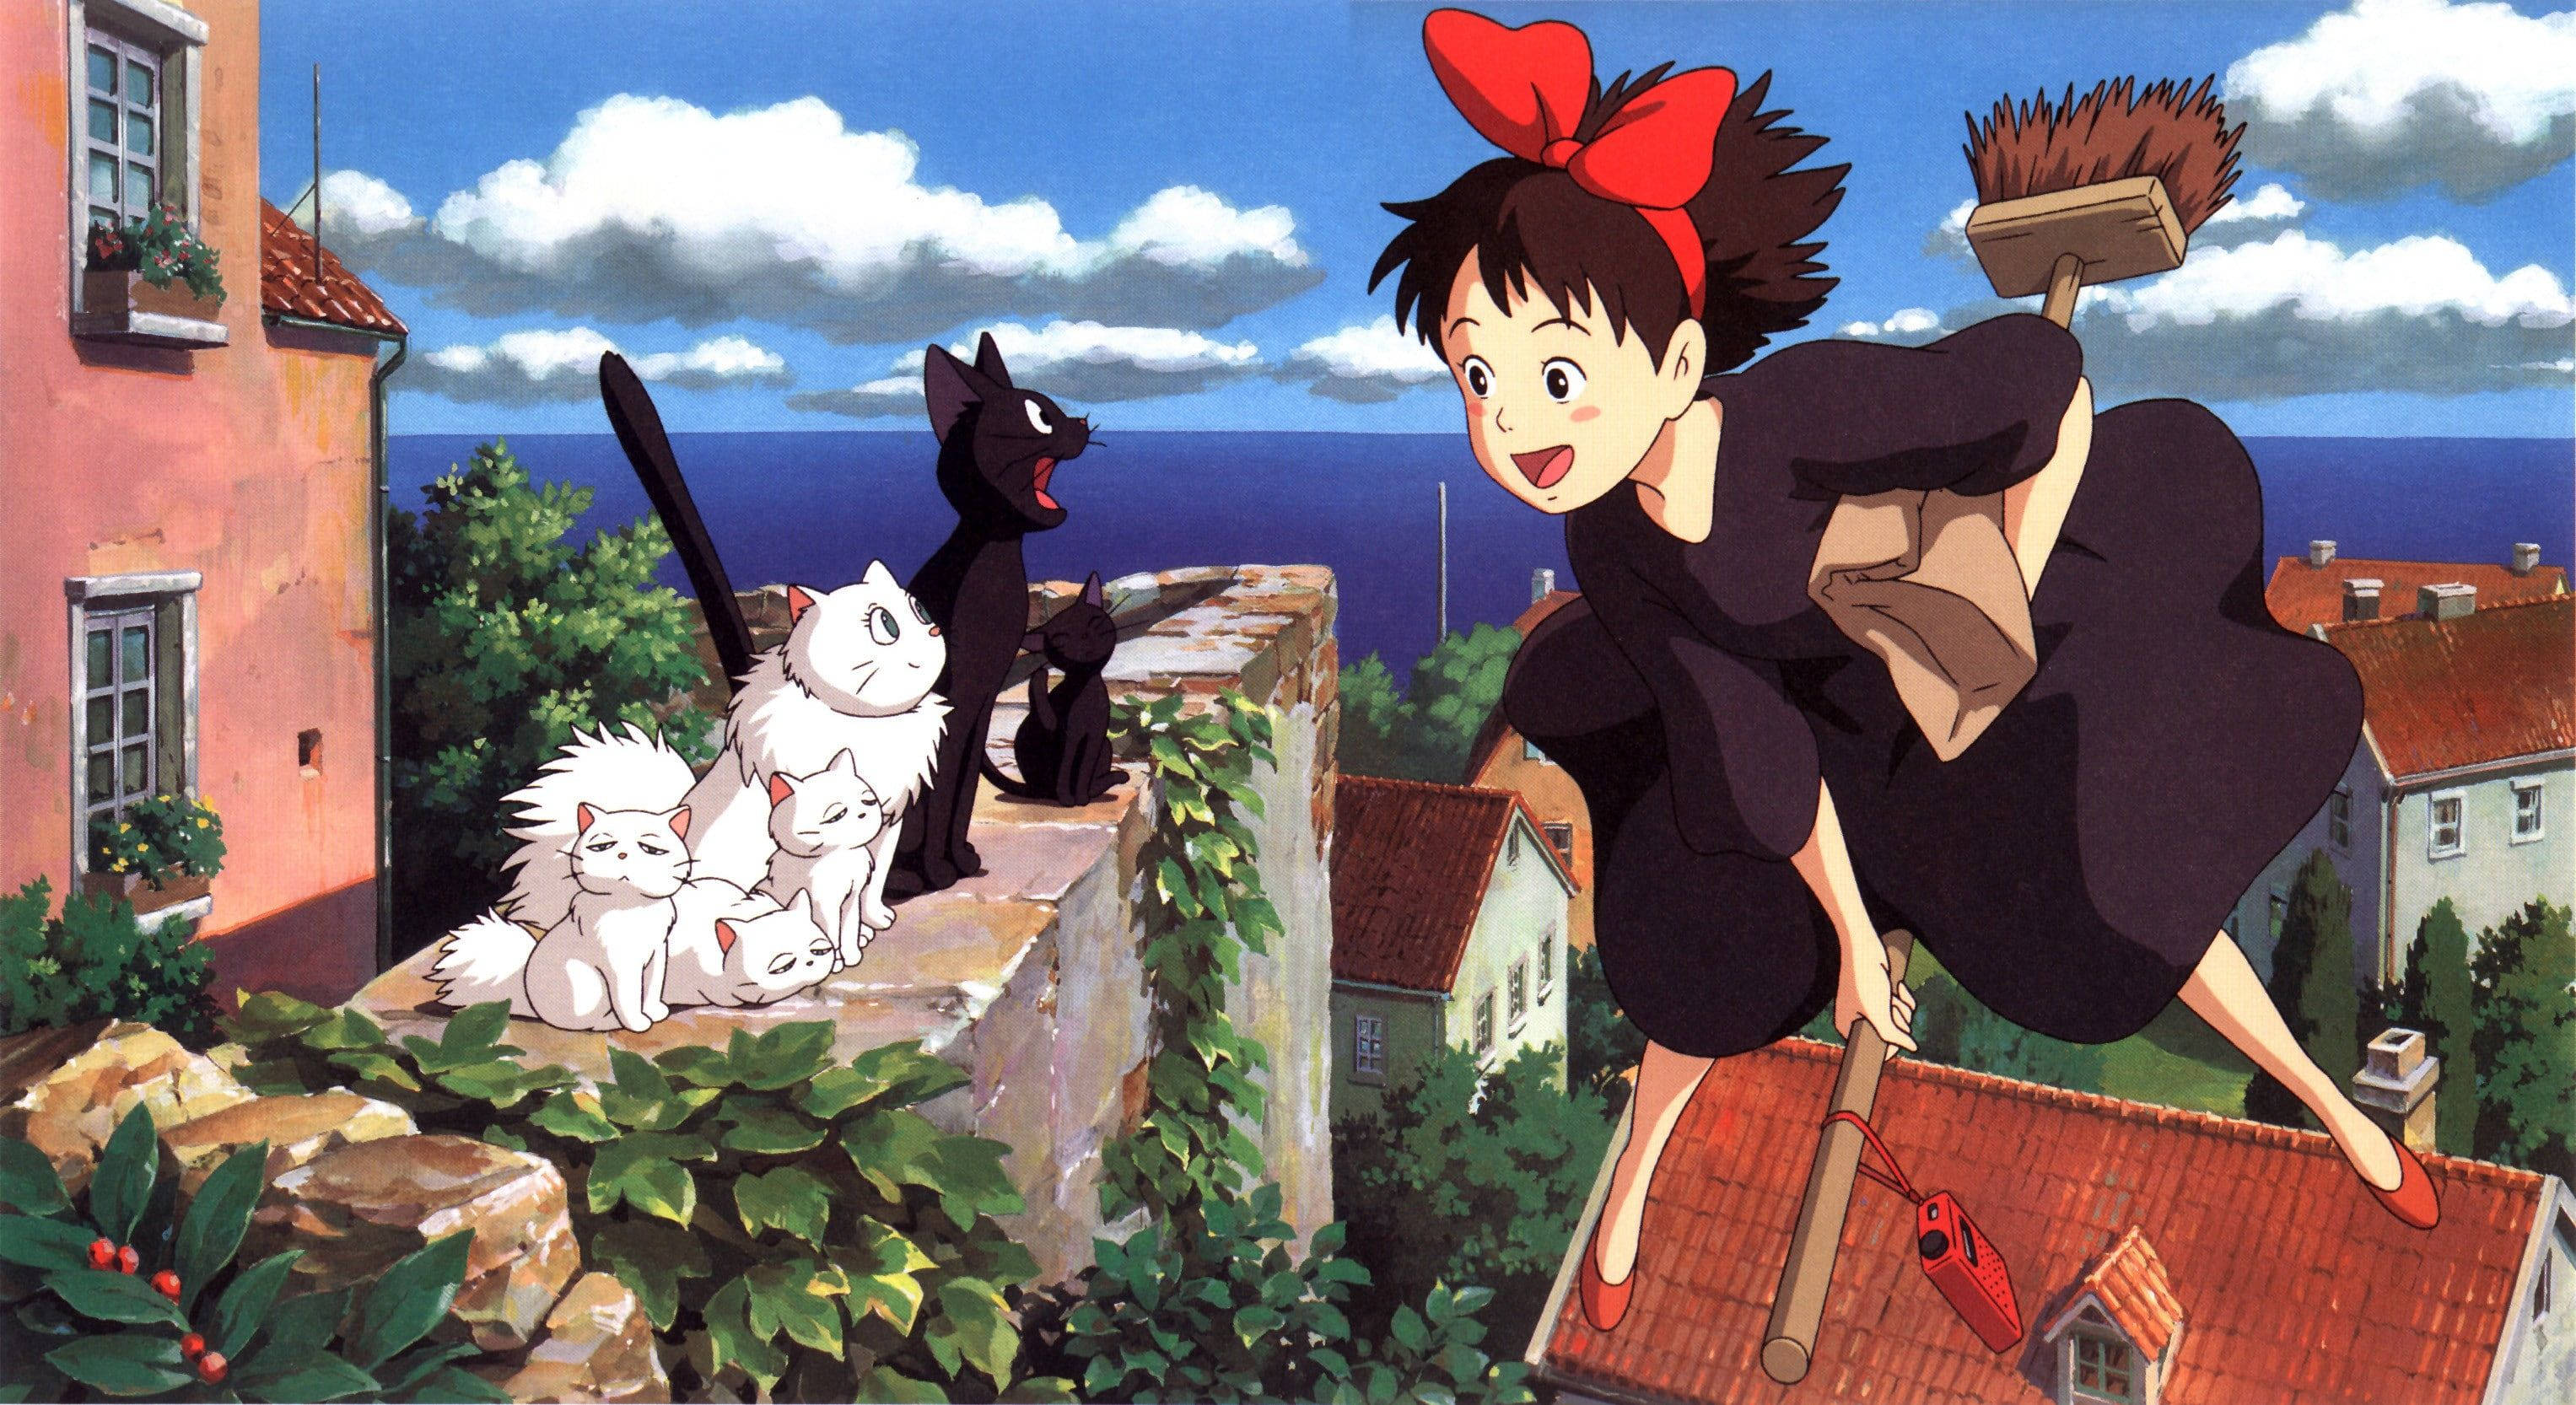 Download Studio Ghibli Kiki And Jiji Wallpaper Wallpapers Com